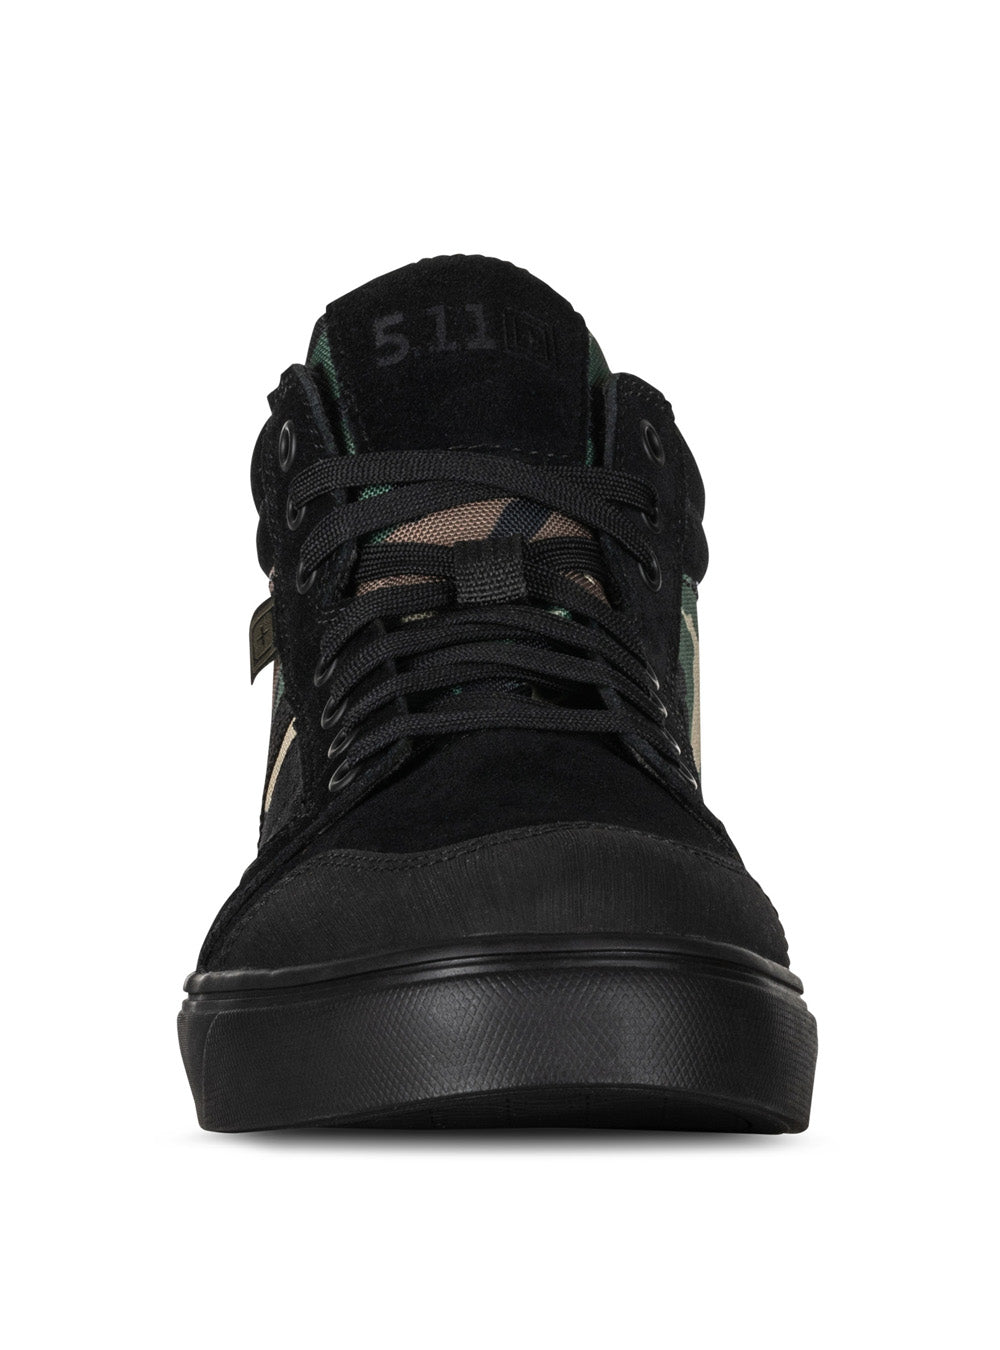 5.11 Tactical Norris Sneaker - Woodland Camo - TacSource